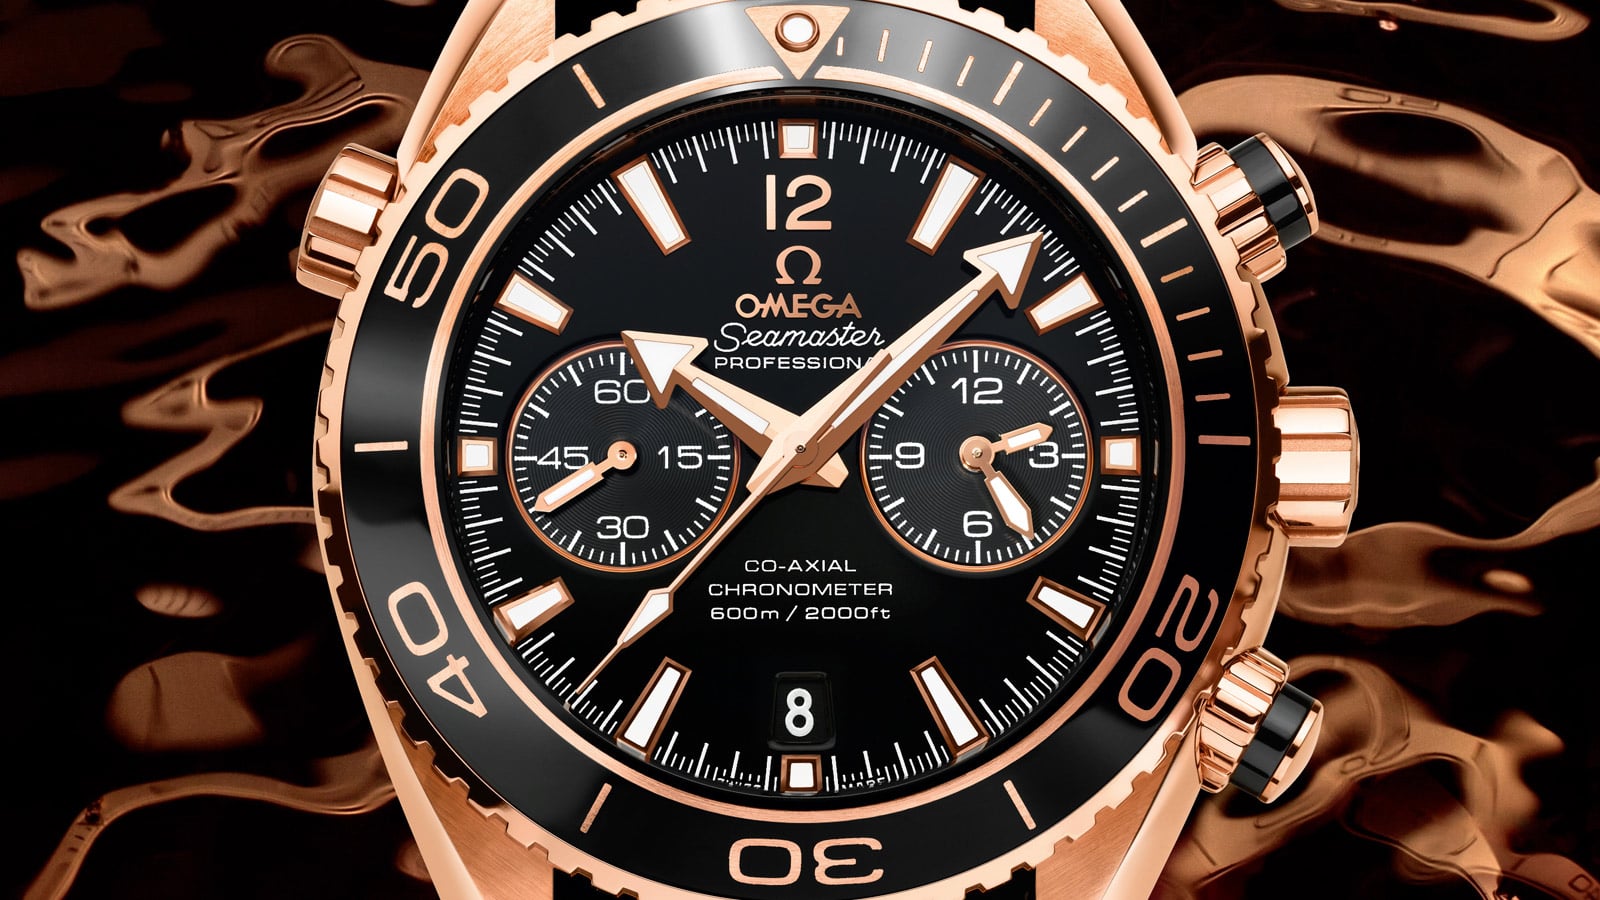 Omega 987 (33.3) Original owner - Omega service 2021